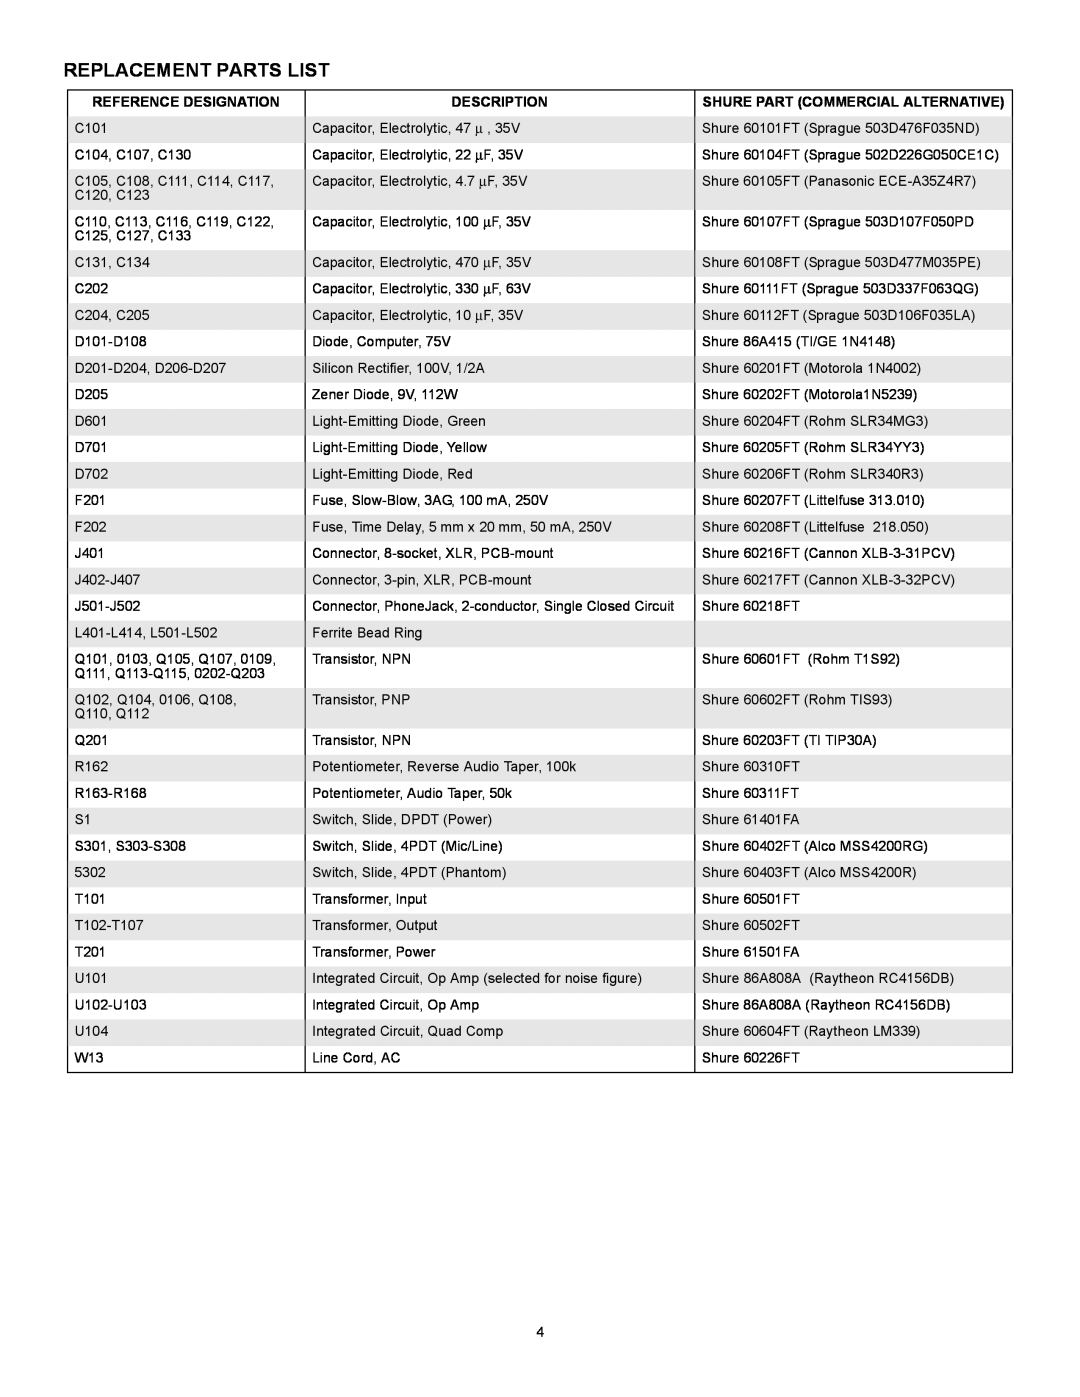 Shure FP16A manual Replacement Parts List, Reference Designation, Description, Shure Part Commercial Alternative 